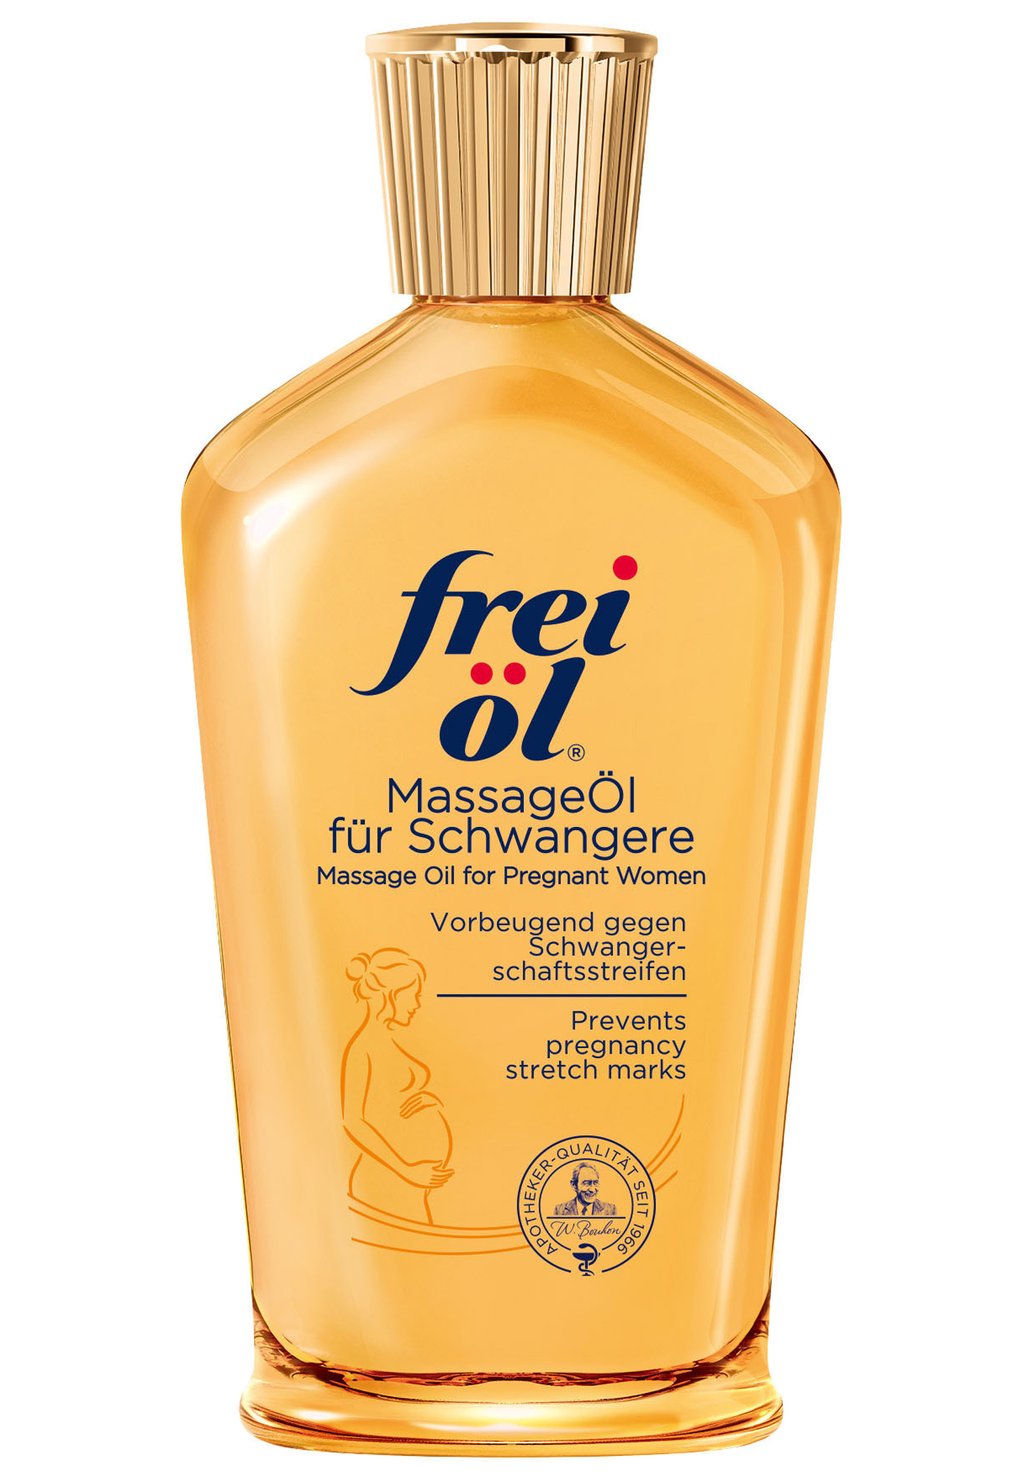 Масло для тела KÖRPERPFLEGE MASSAGEÖL FÜR SCHWANGERE Frei Öl цена и фото